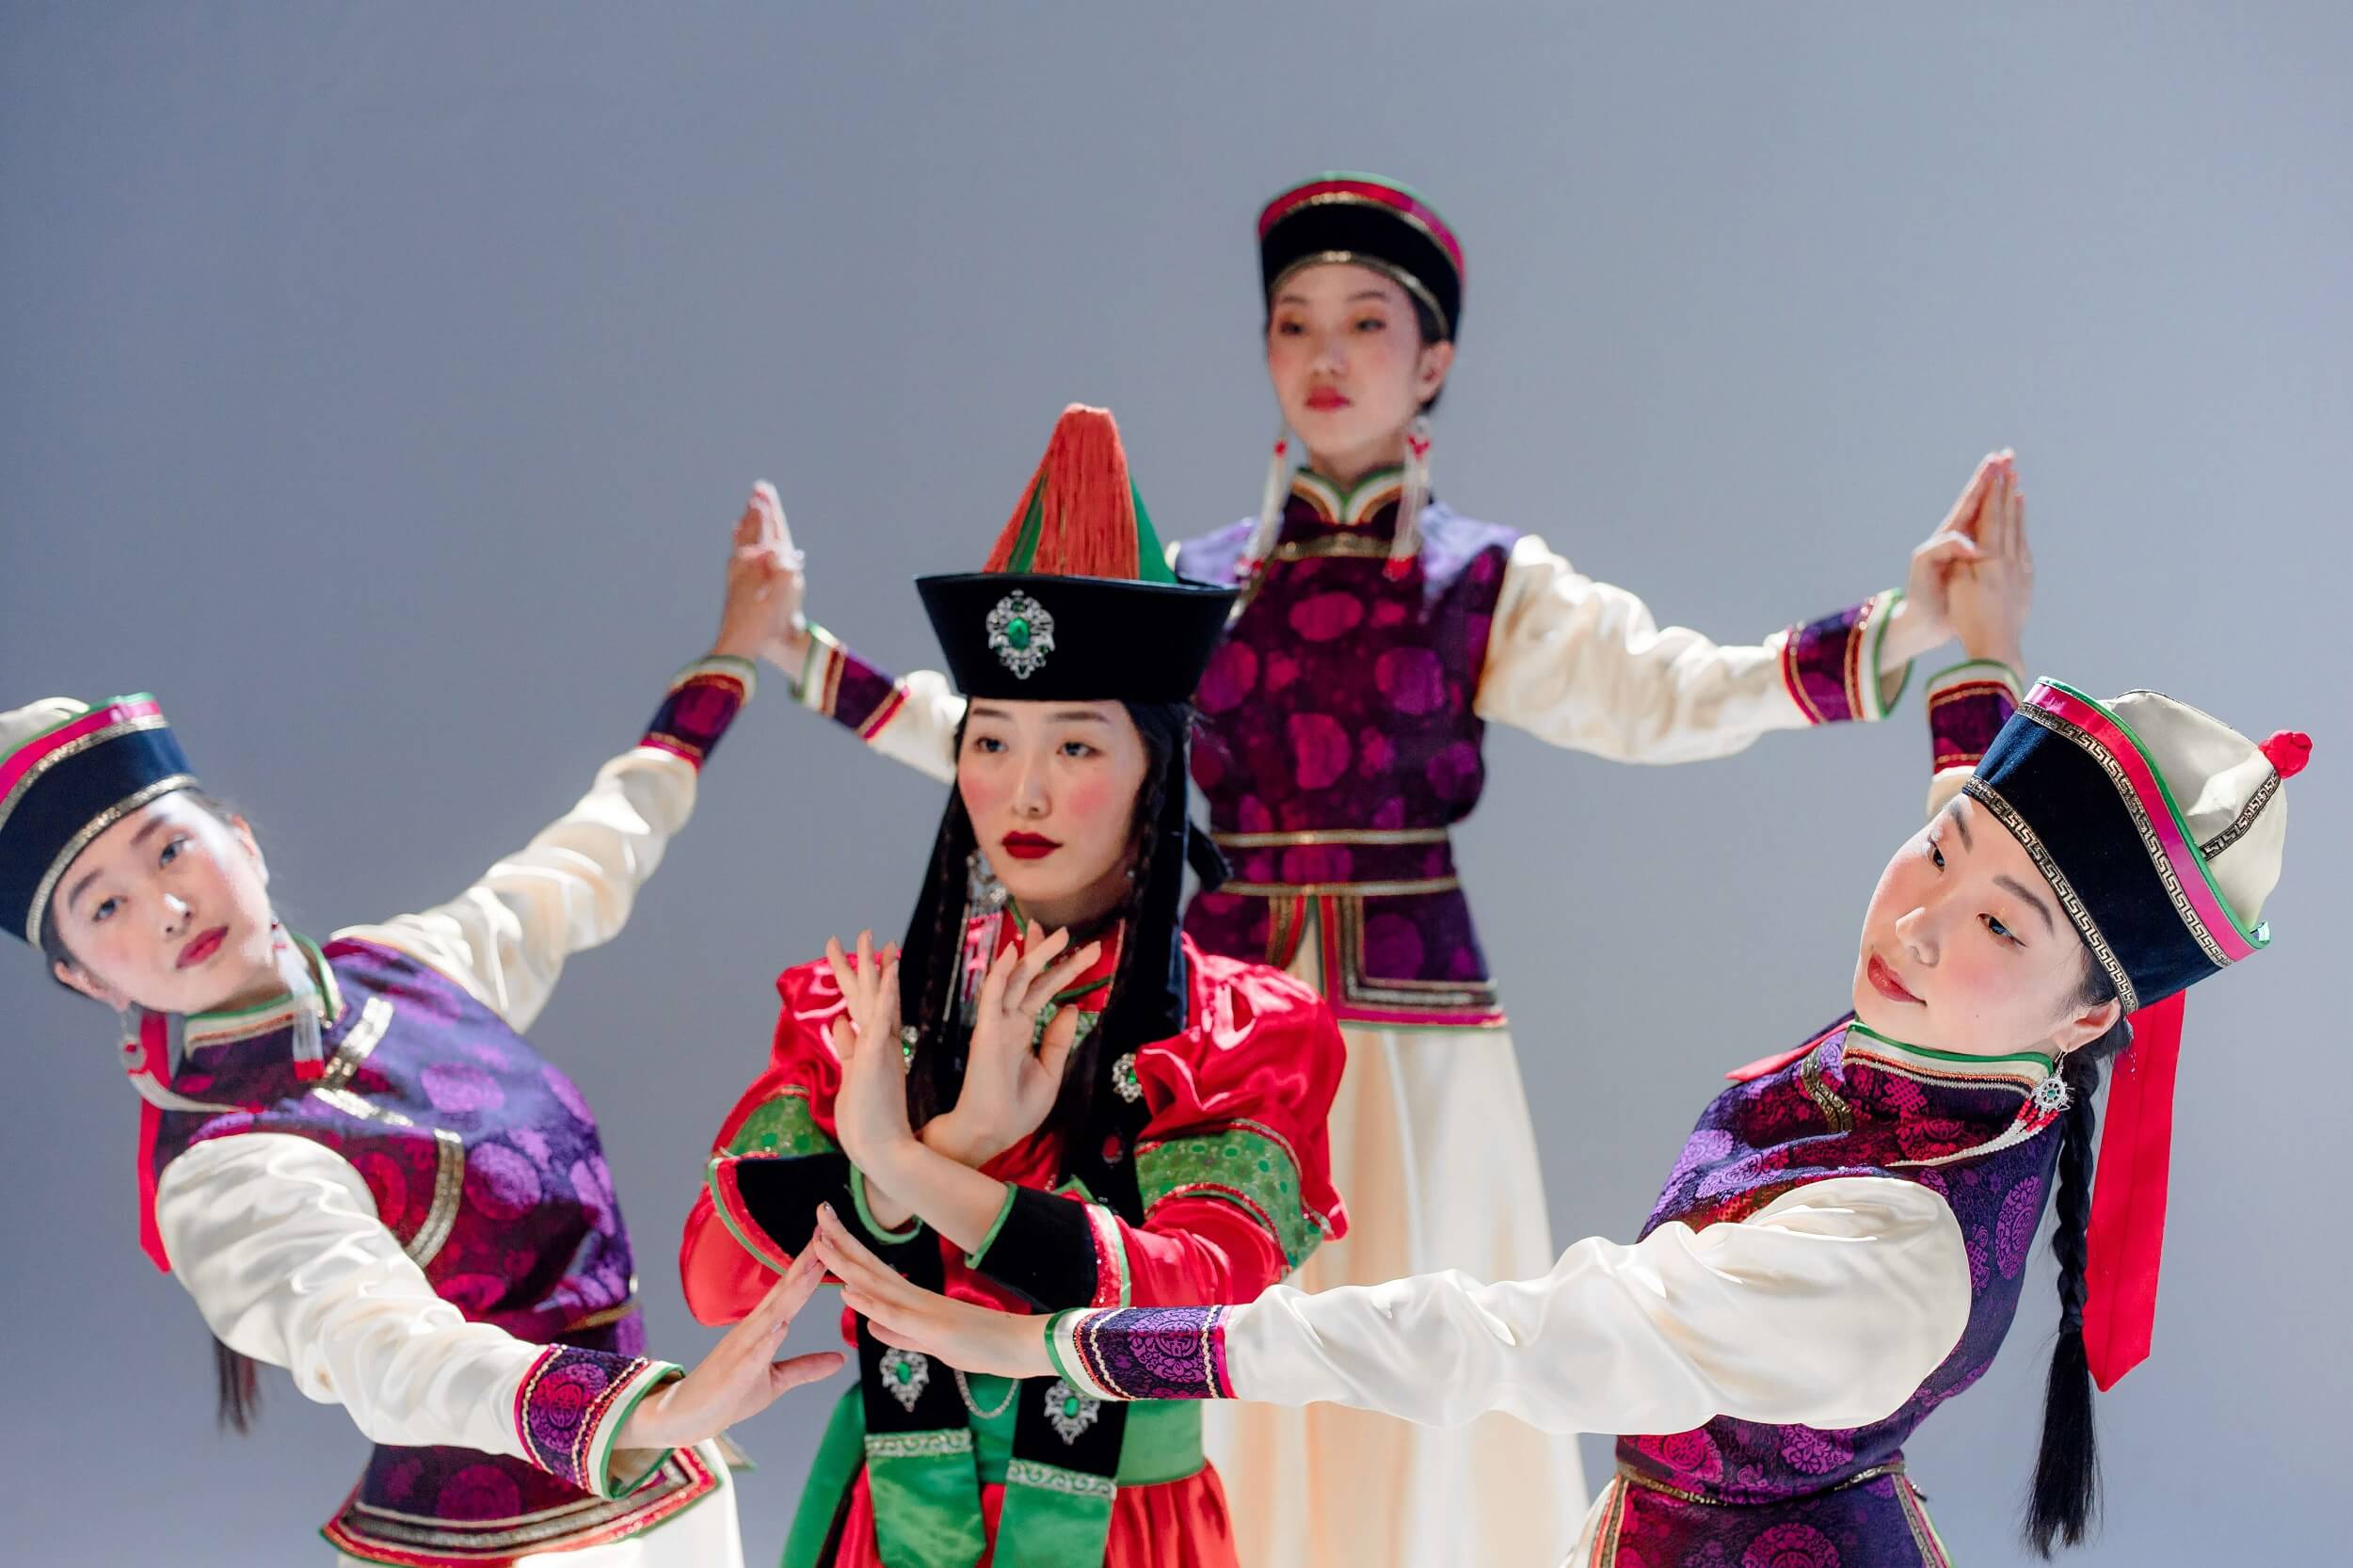 mongolian women dancing